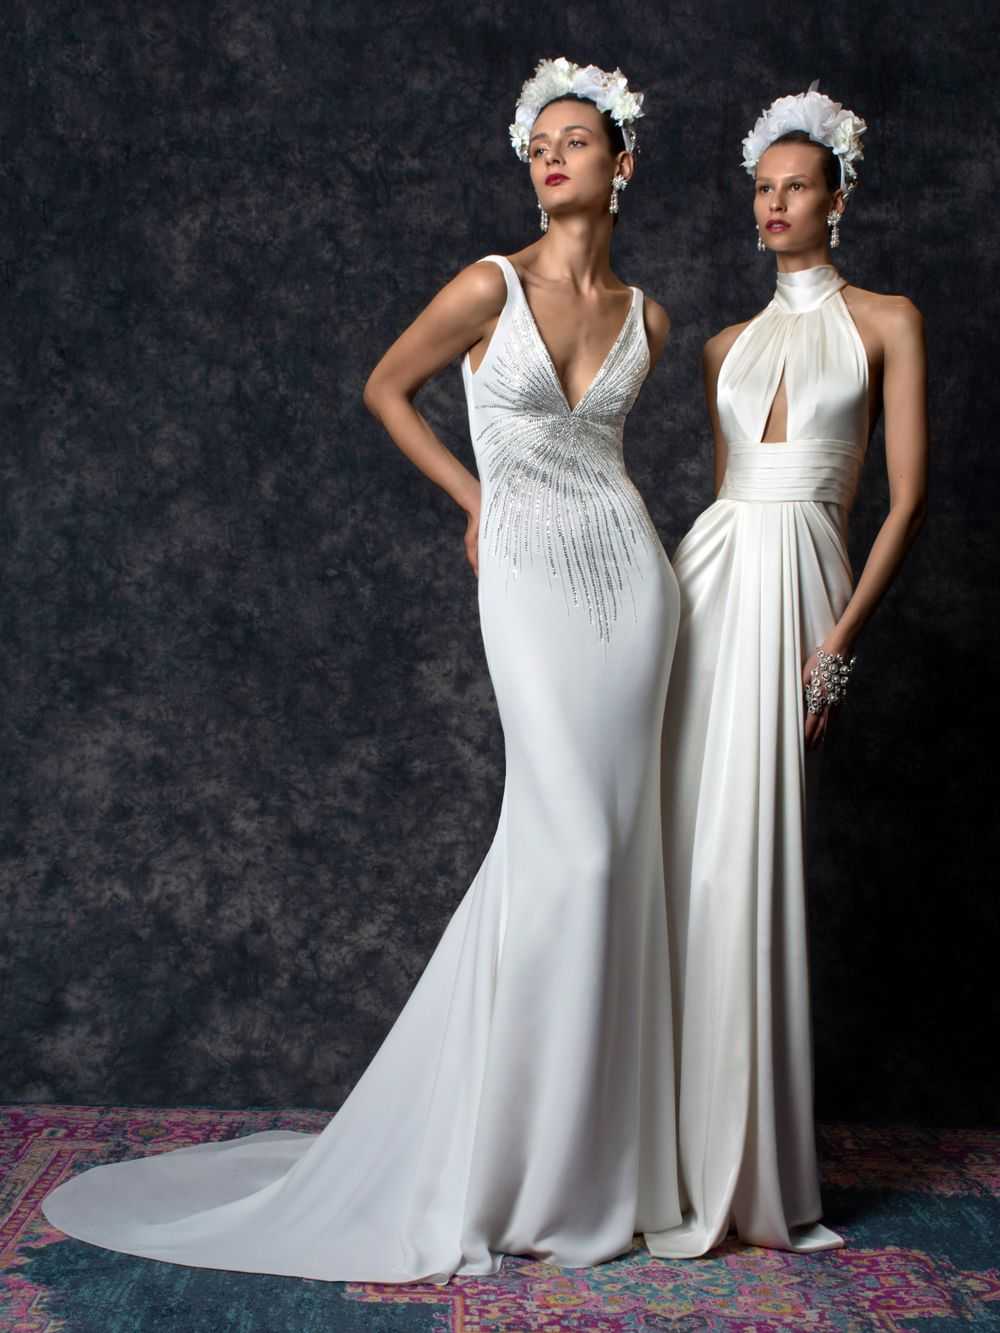 Модные свадебные платья 2020-2021 – новинки, тренды и тенденции свадебных нарядов на фото